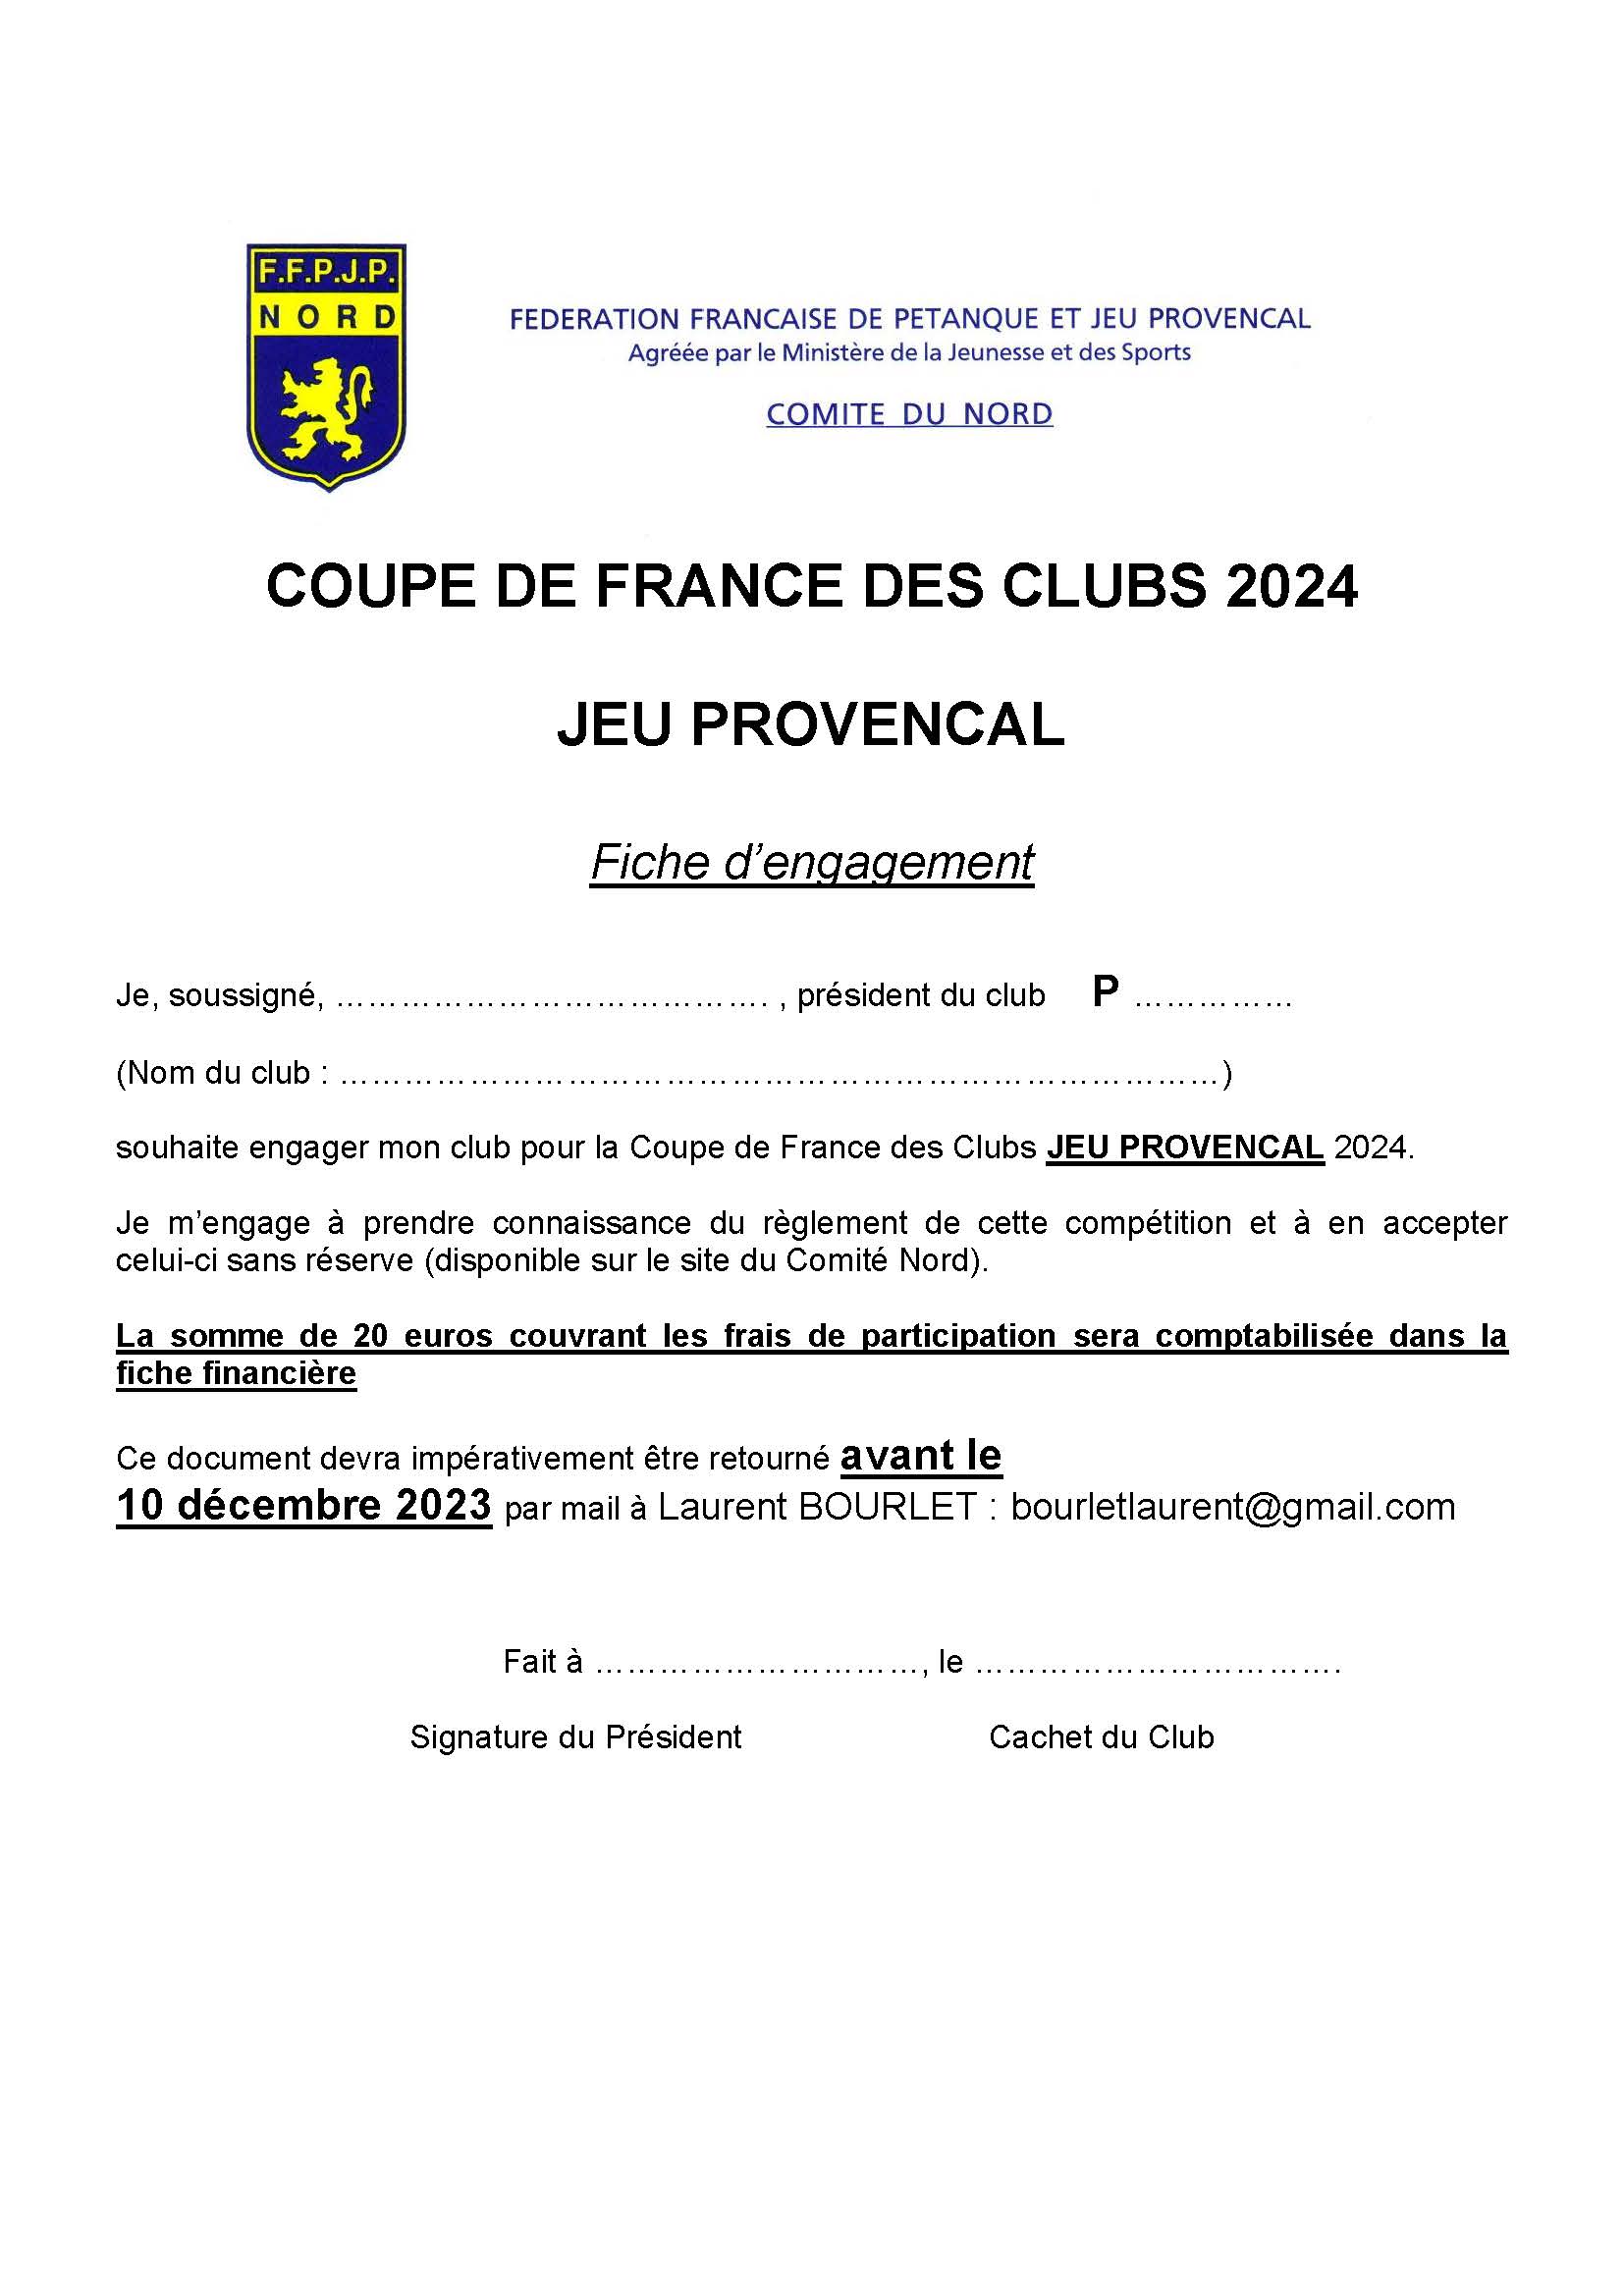 Fiche inscription coupe de france JEU PROVENCAL 2024